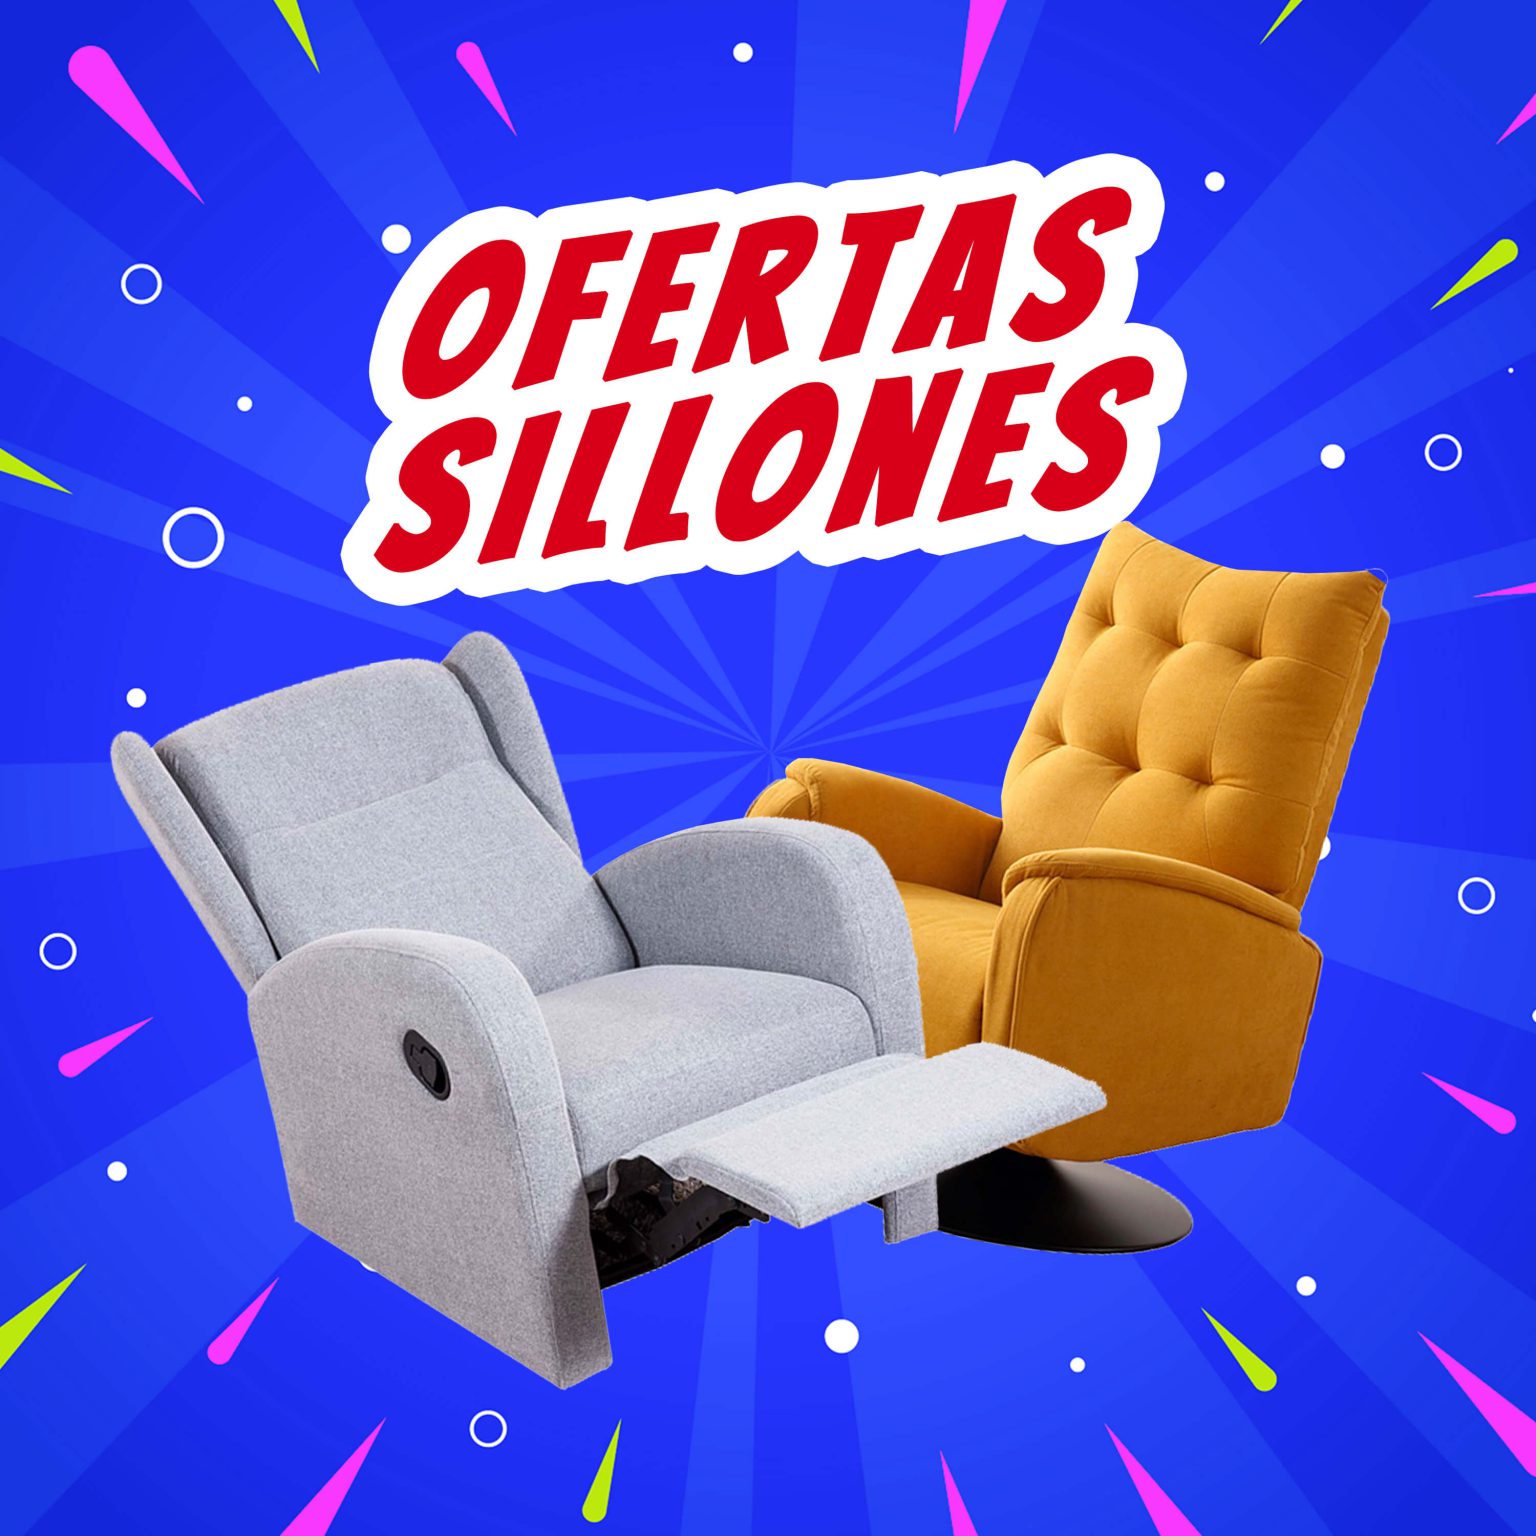 LaTienda3Bs SuperMarzoOertas Promo banner sillones | La Tienda 3Bs